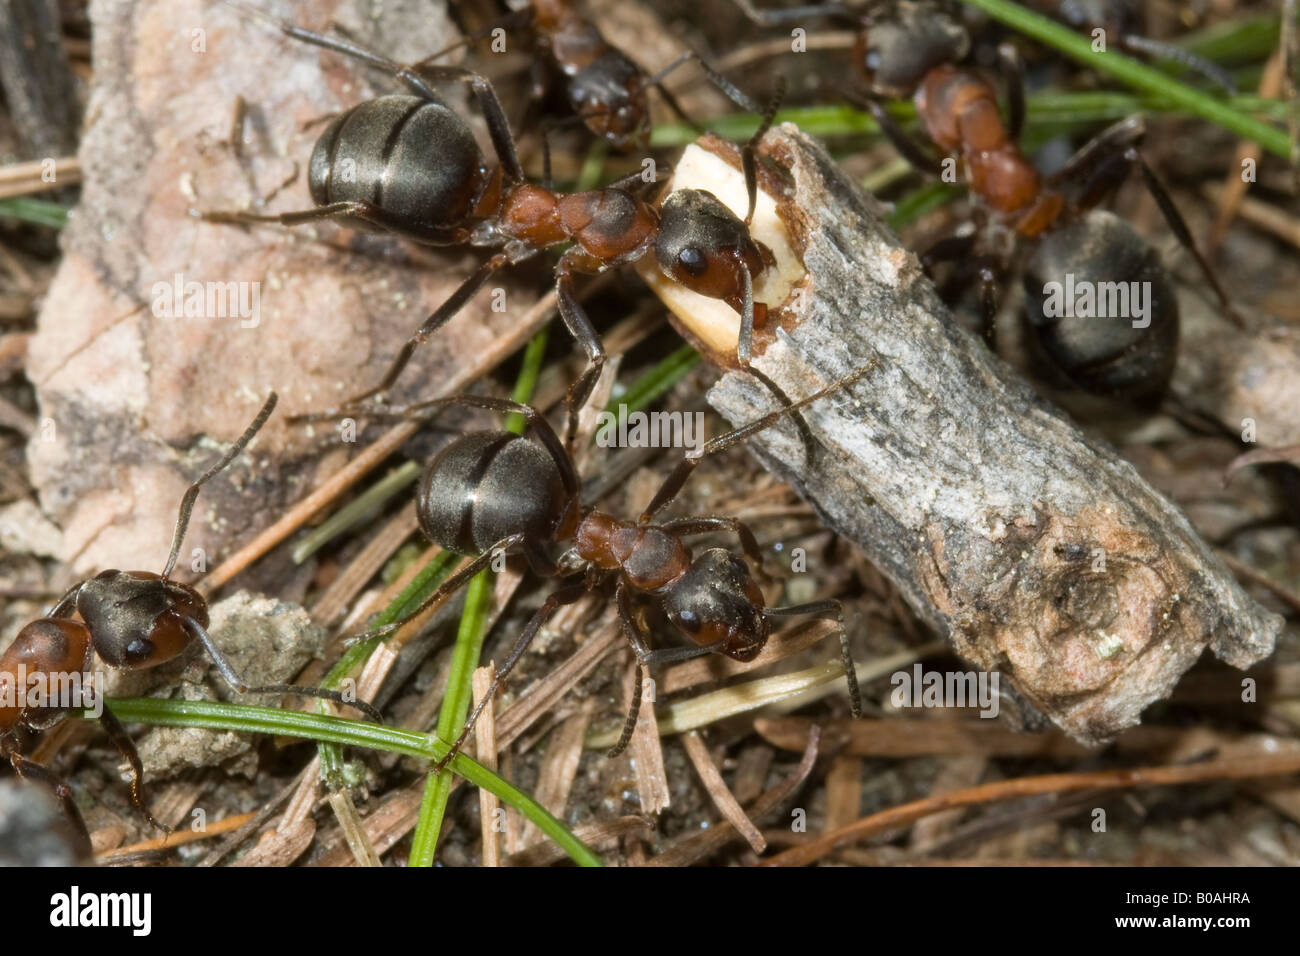 Formica rufa ant formiche montagna rossa imenotteri legno di insetti formica rossa montagna imenotteri insetti Valnontey Cogne Gran para. Foto Stock